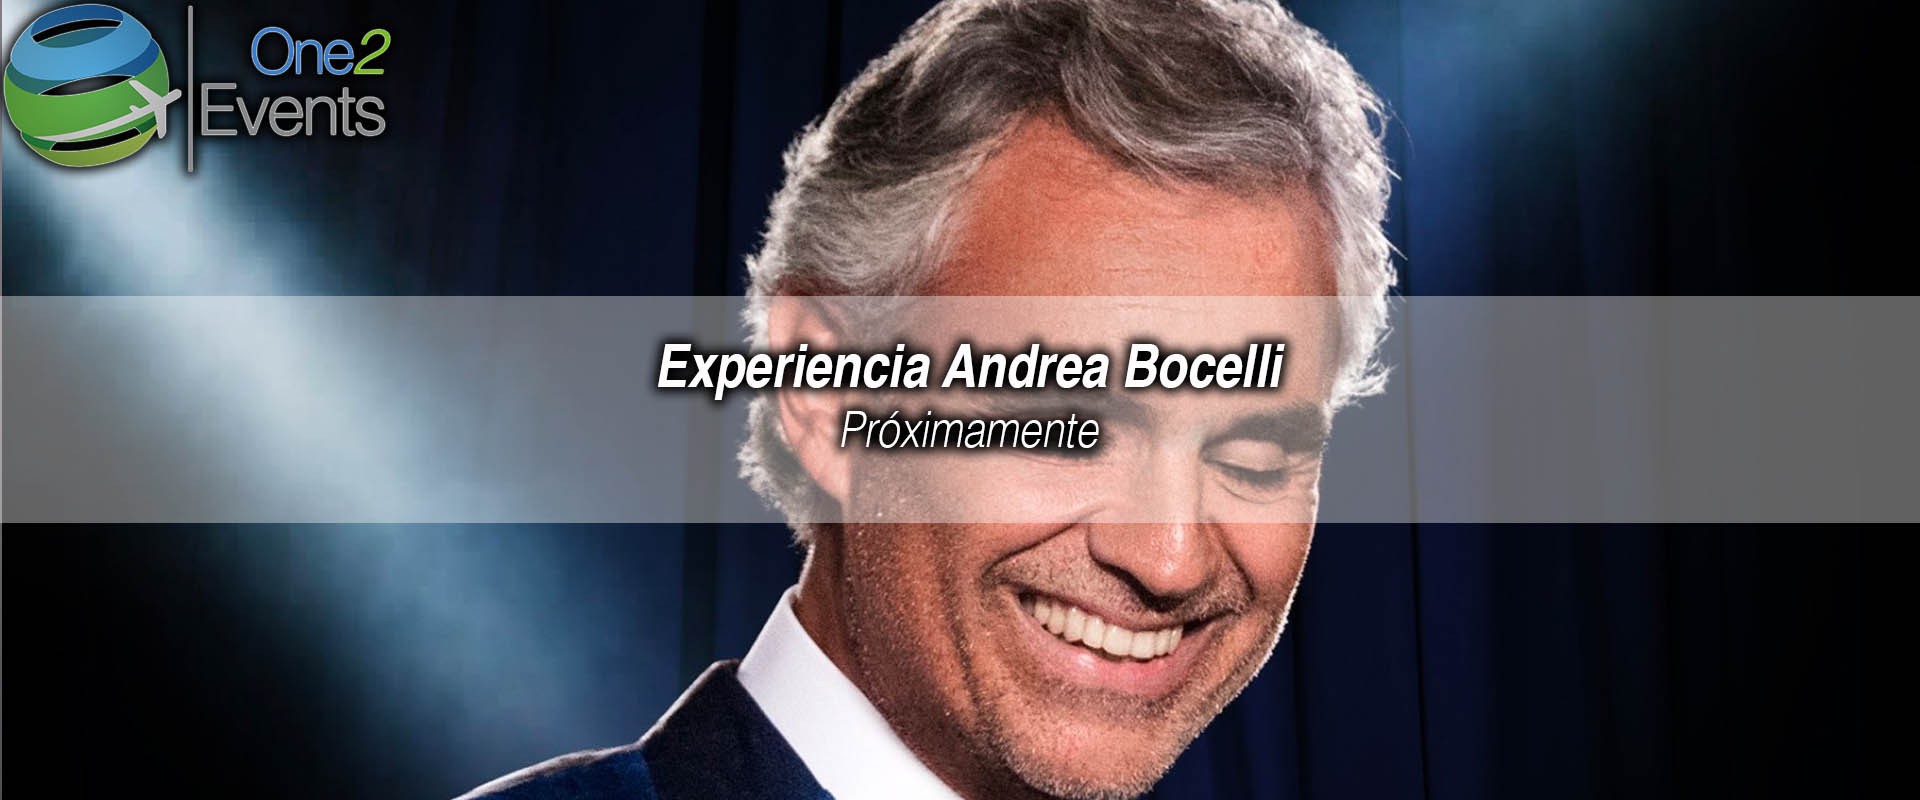 Concierto Andrea Bocelli en American Airlines, Dallas